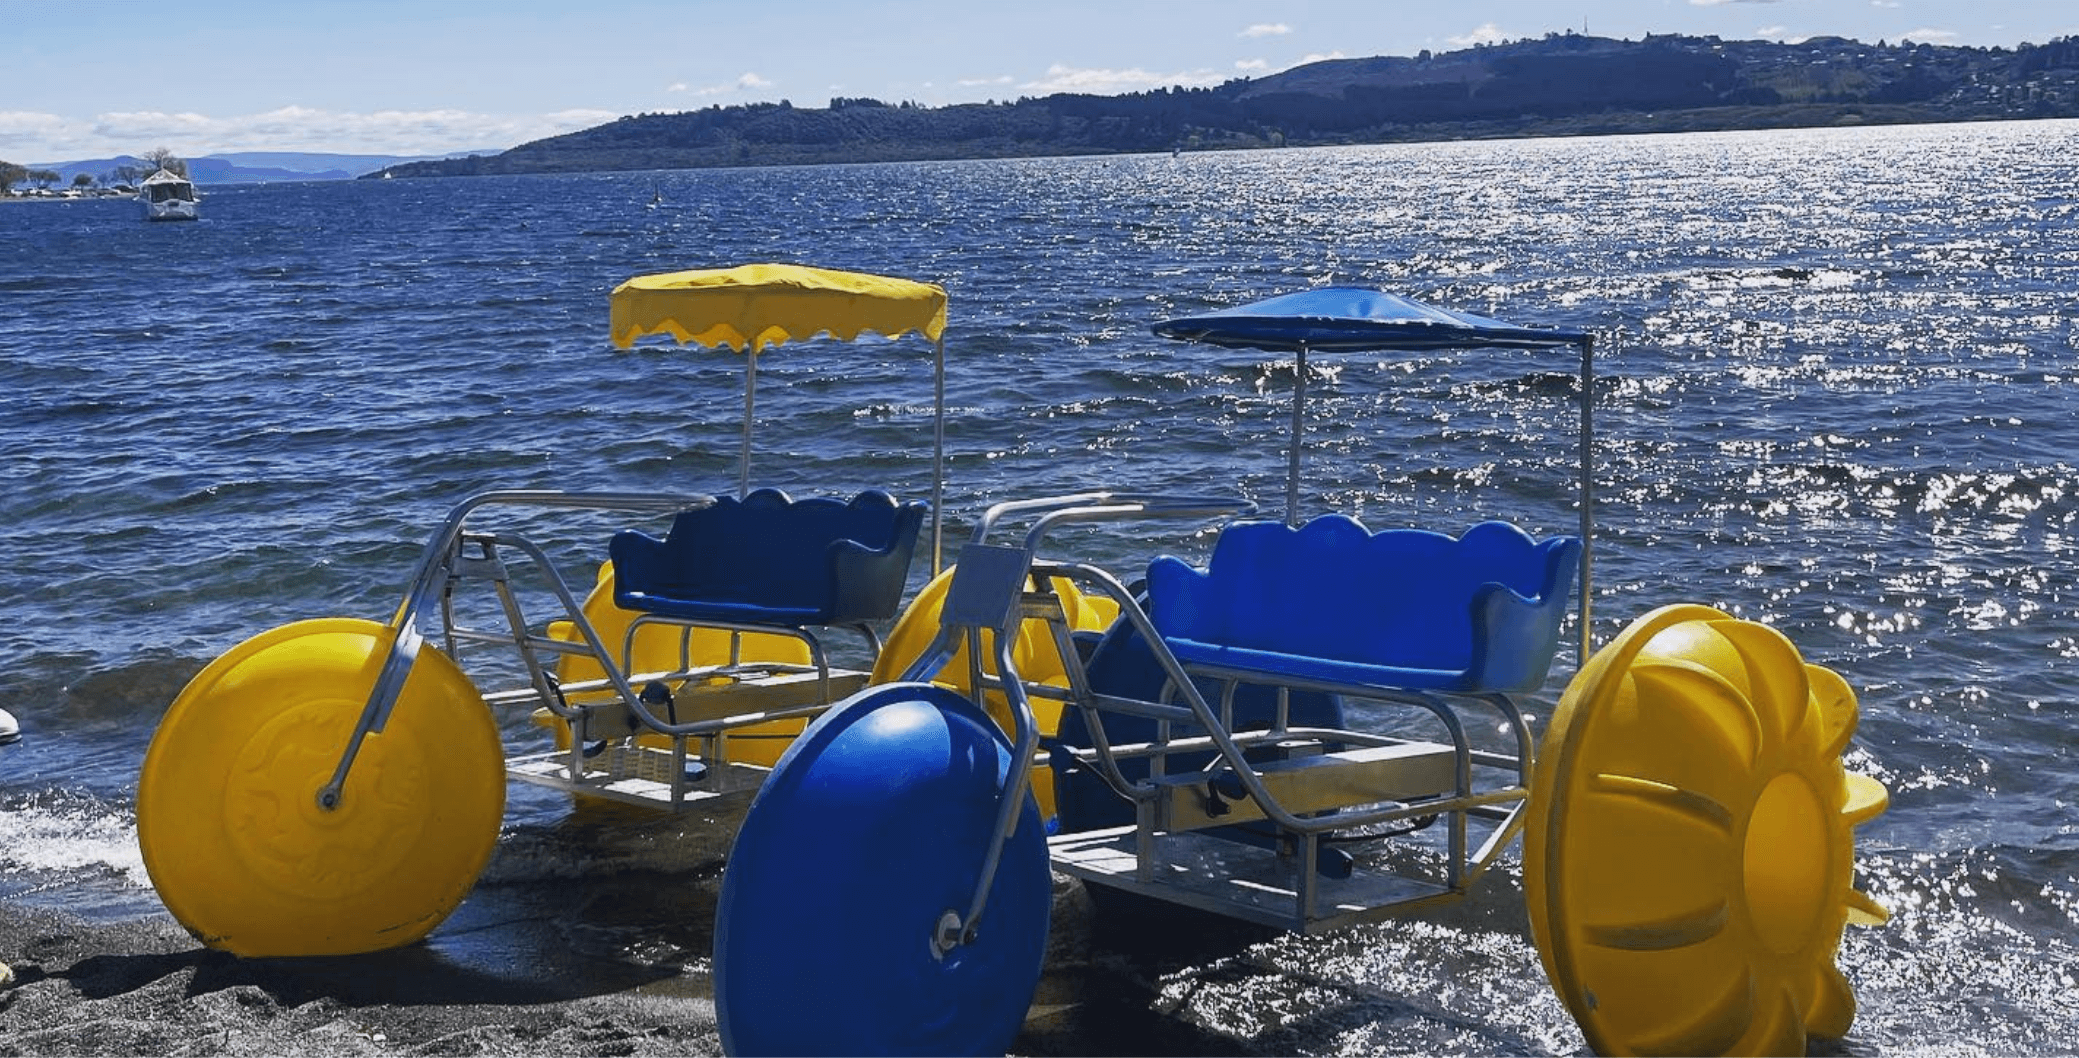 Taupo Pedal Boats - Lake Taupo